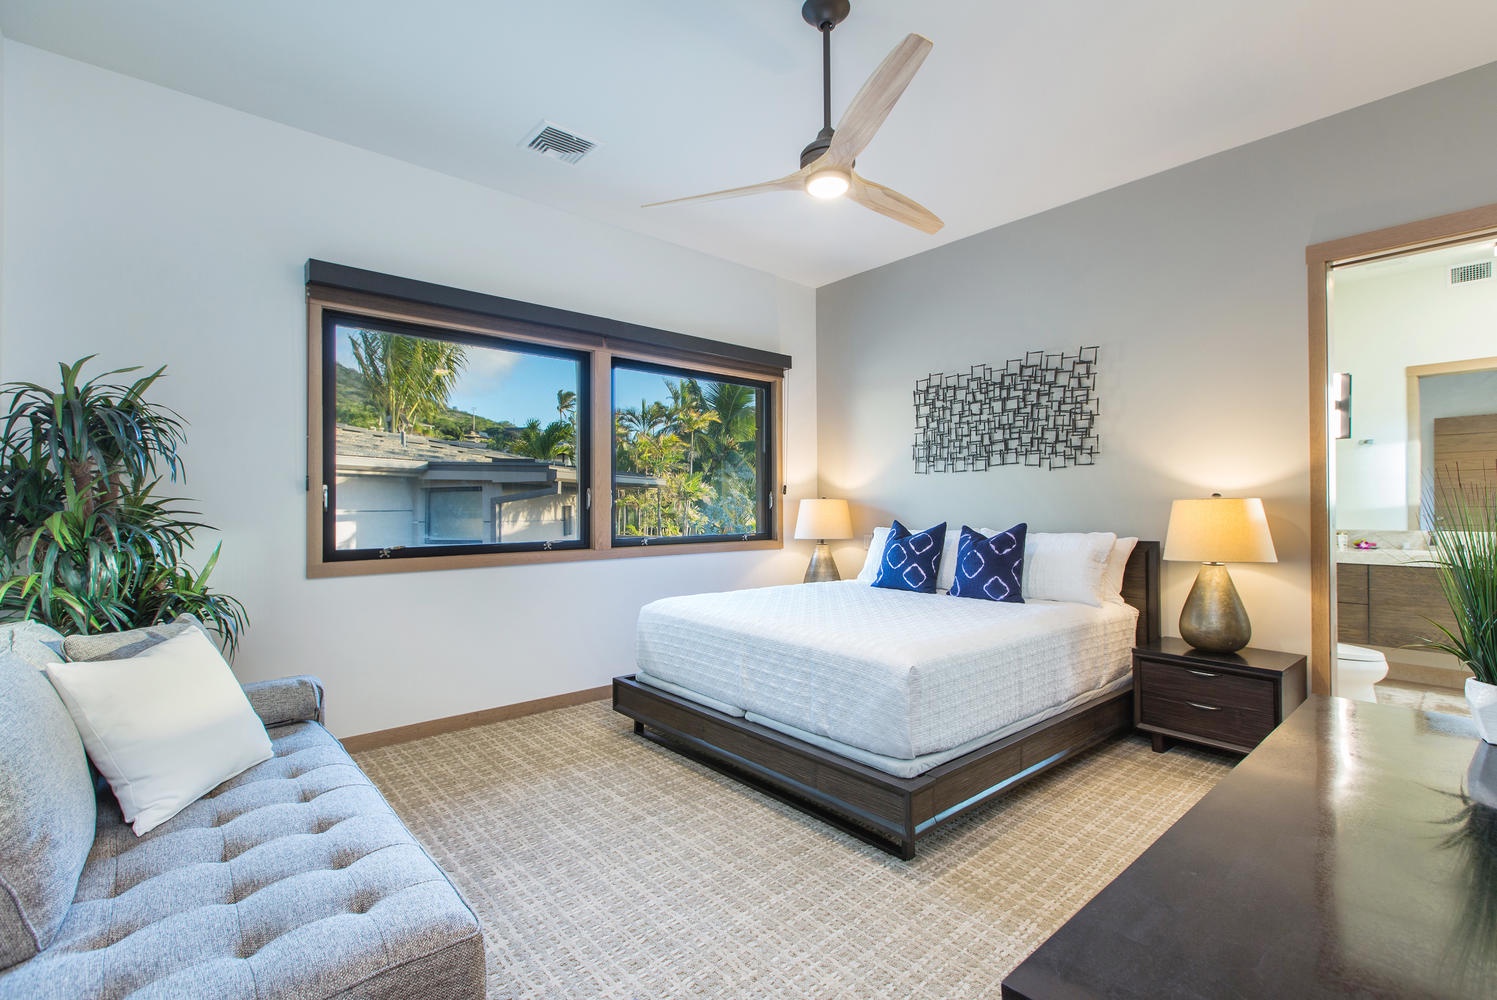 Honolulu Vacation Rentals, Ocean House - Upstairs bedroom suite.